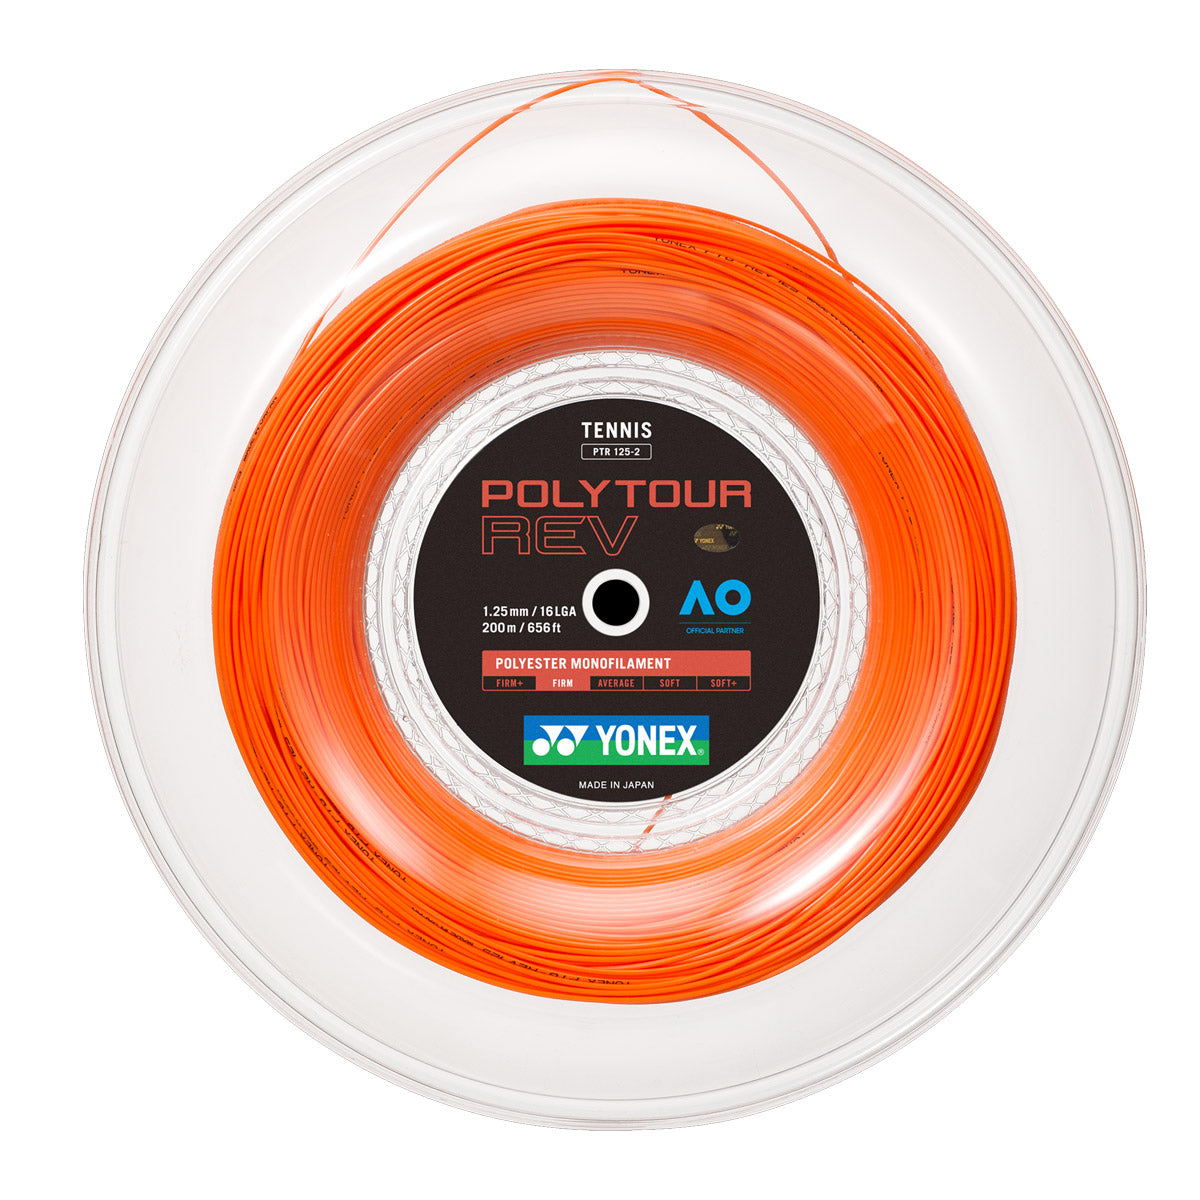 Yonex Polytour Rev 1.25mm 200m Reel Tennis String Orange